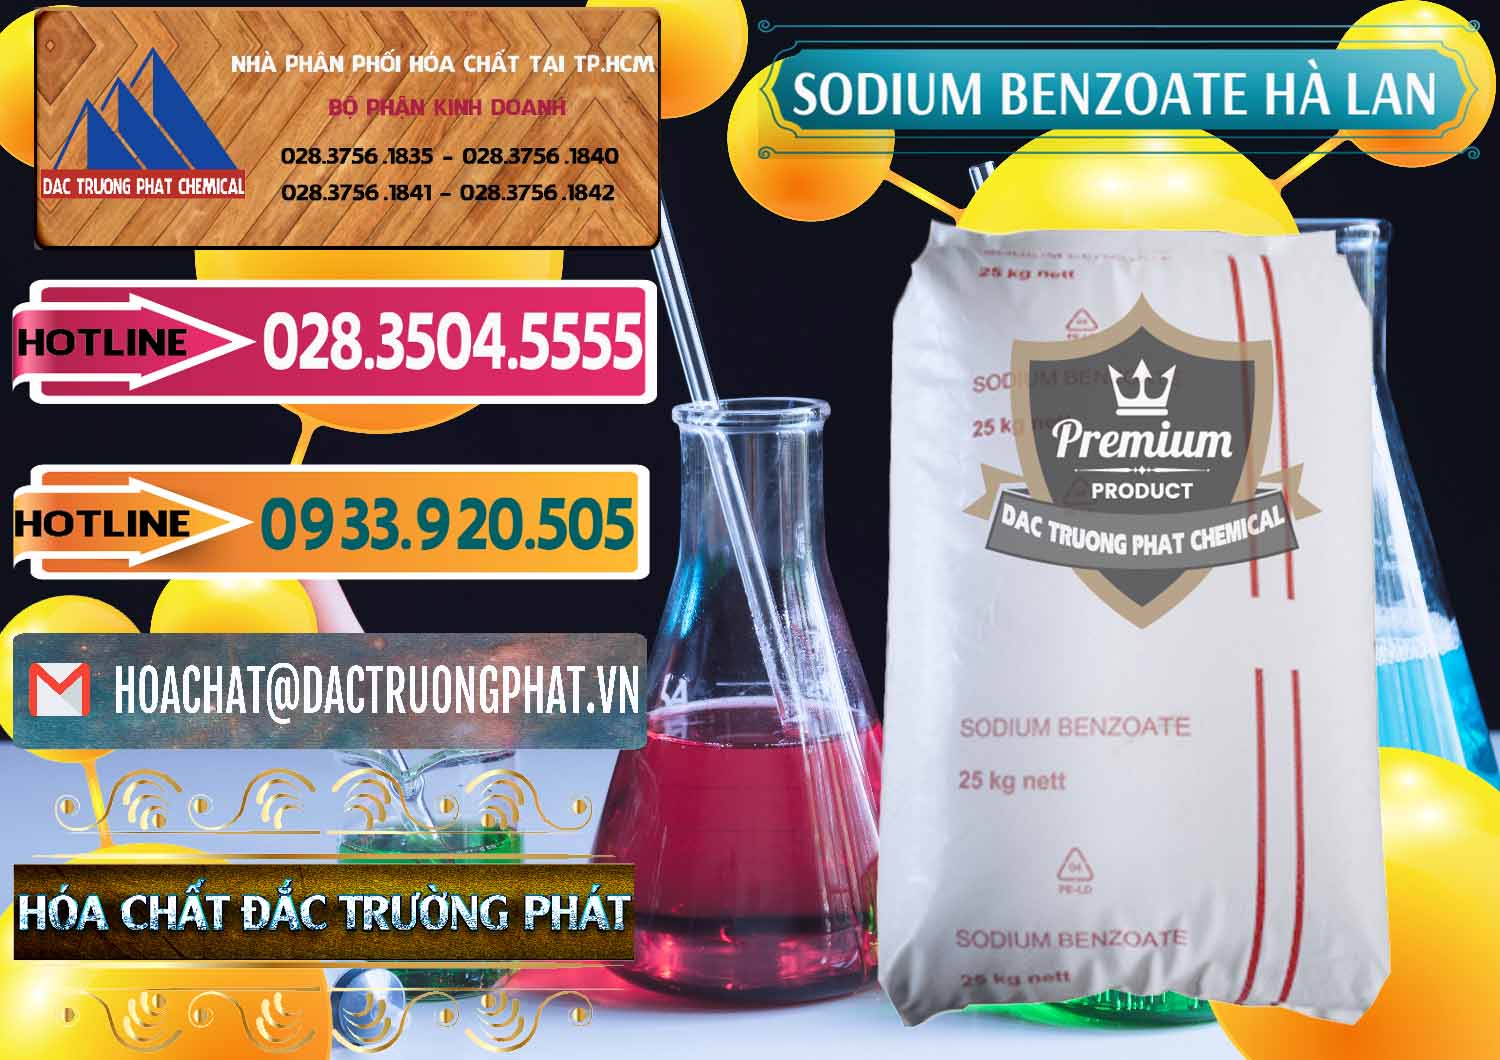 Đơn vị chuyên bán và phân phối Sodium Benzoate - Mốc Bột Chữ Cam Hà Lan Netherlands - 0360 - Nơi phân phối - cung ứng hóa chất tại TP.HCM - dactruongphat.vn